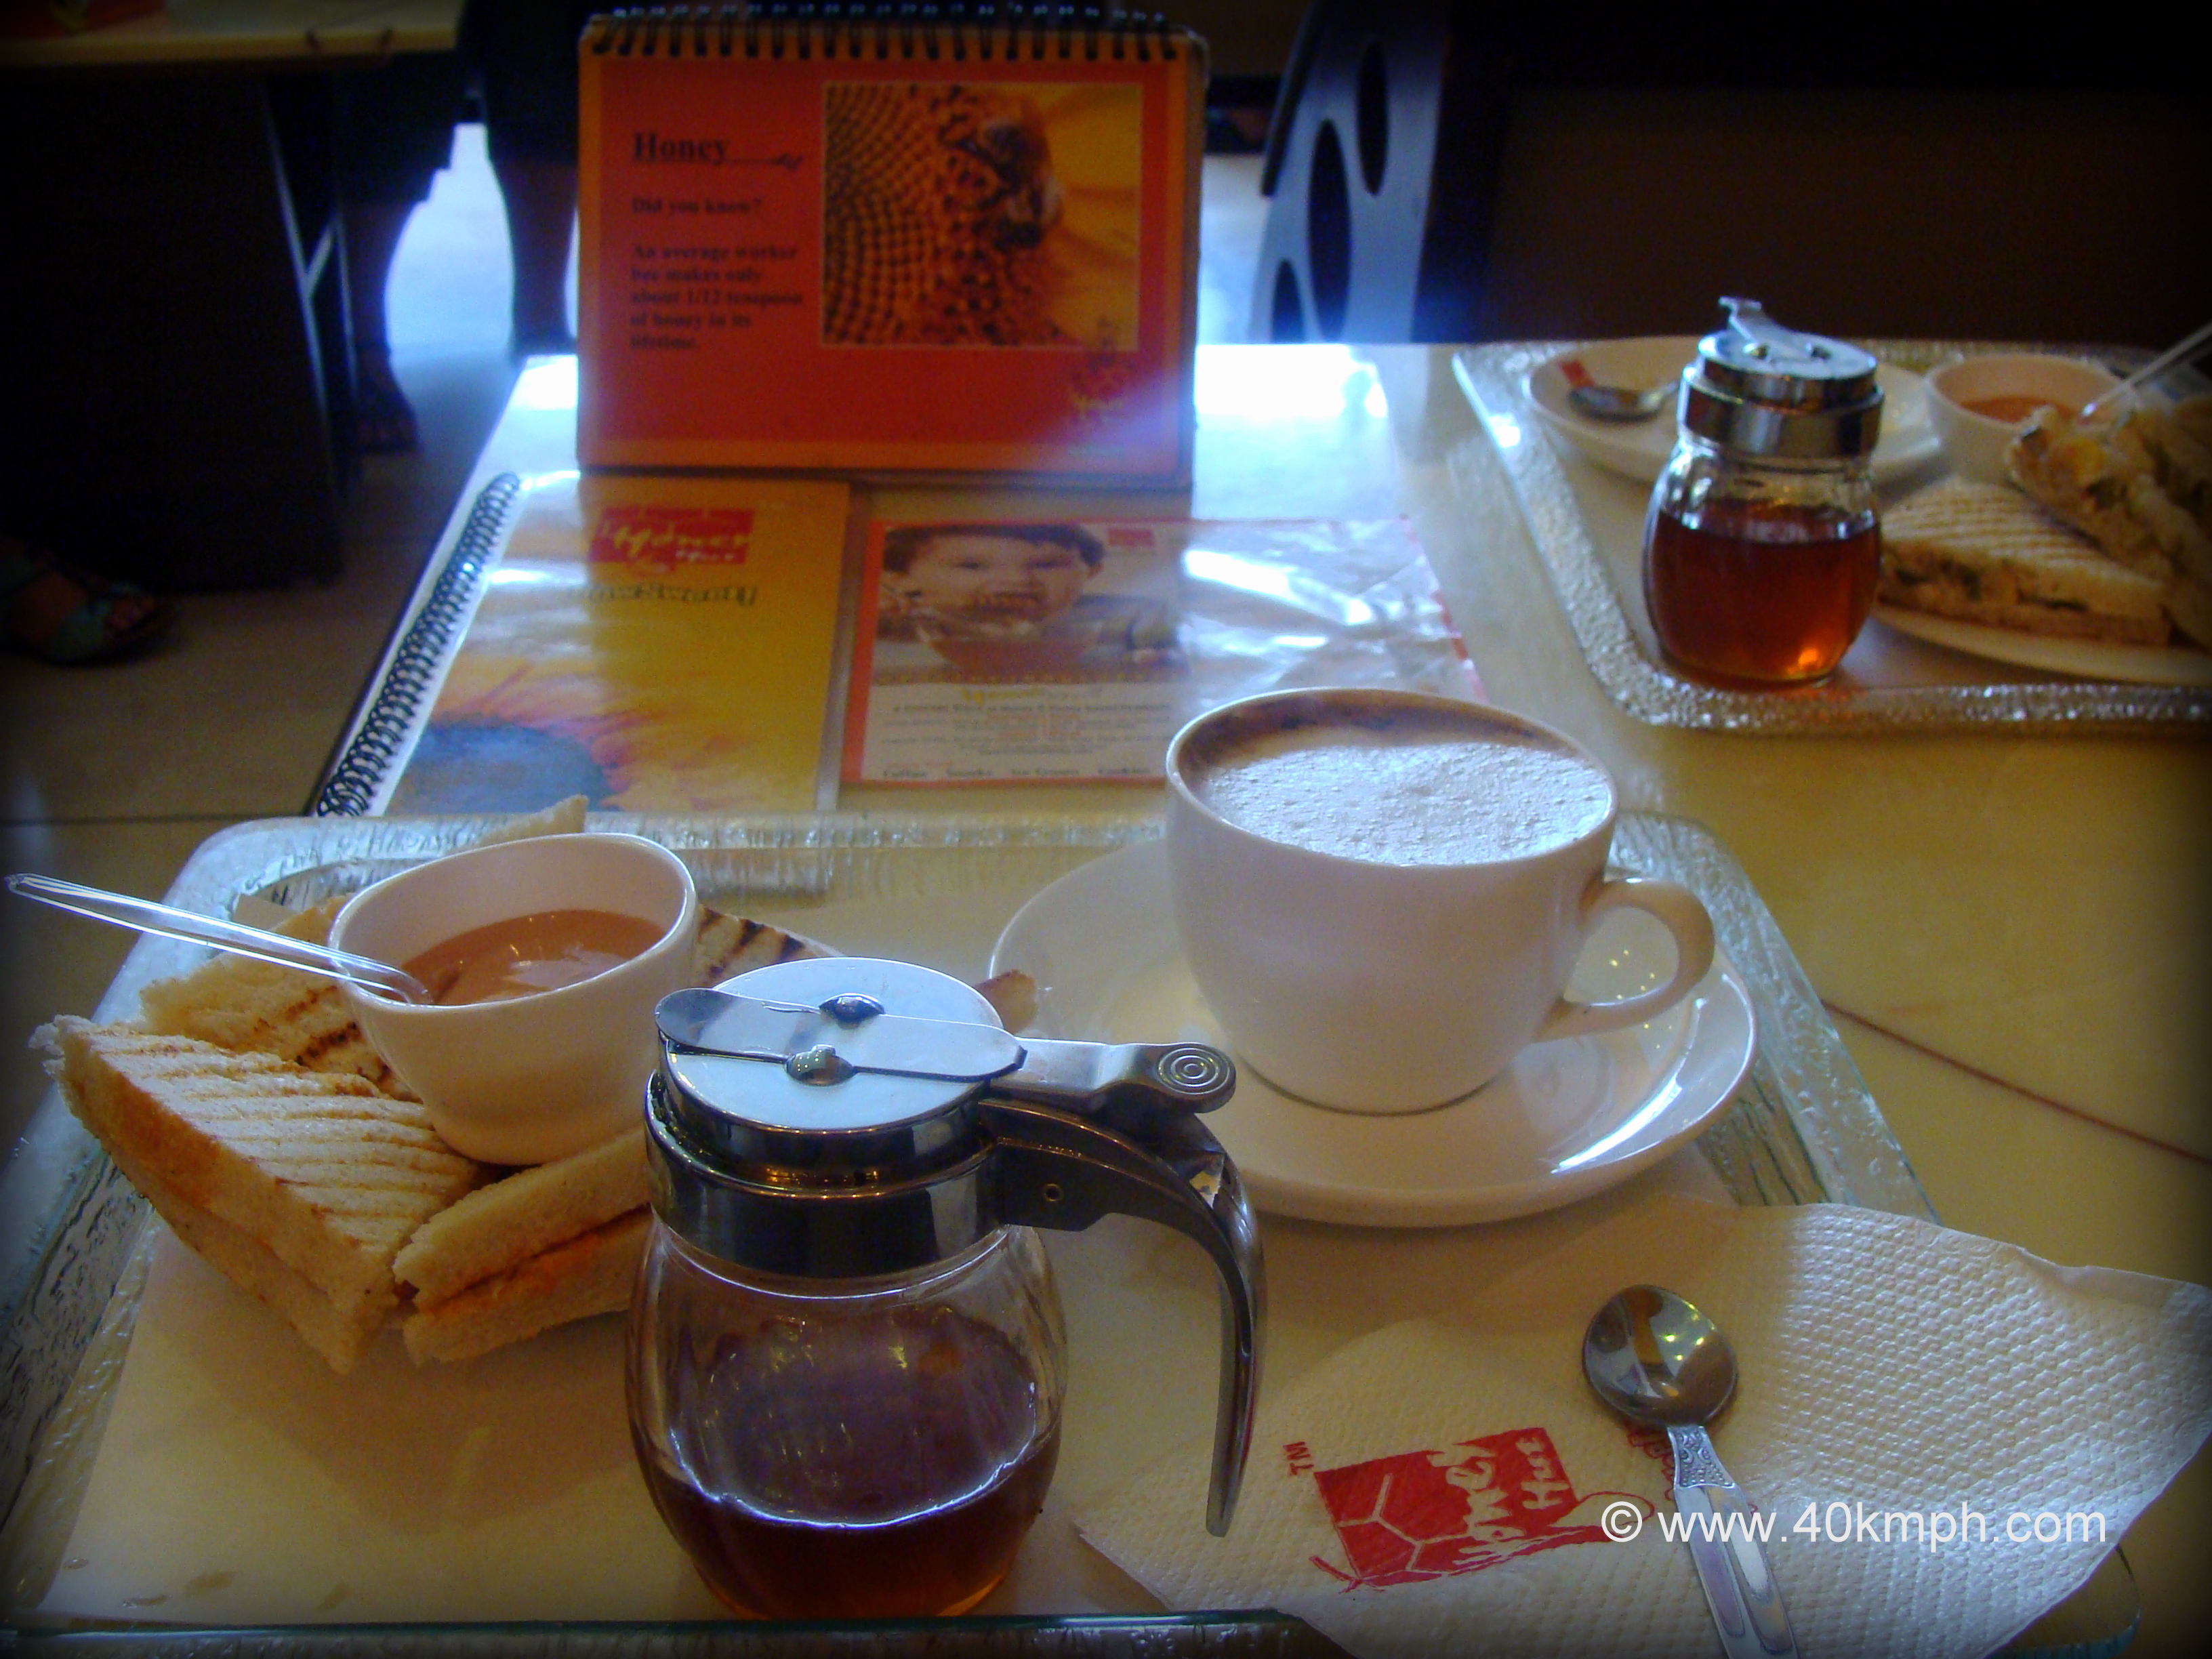 Grill Cheese Sandwich and Honey Cappuccino for Breakfast at Honey Hut, Rishikesh (Uttarakhand, India)